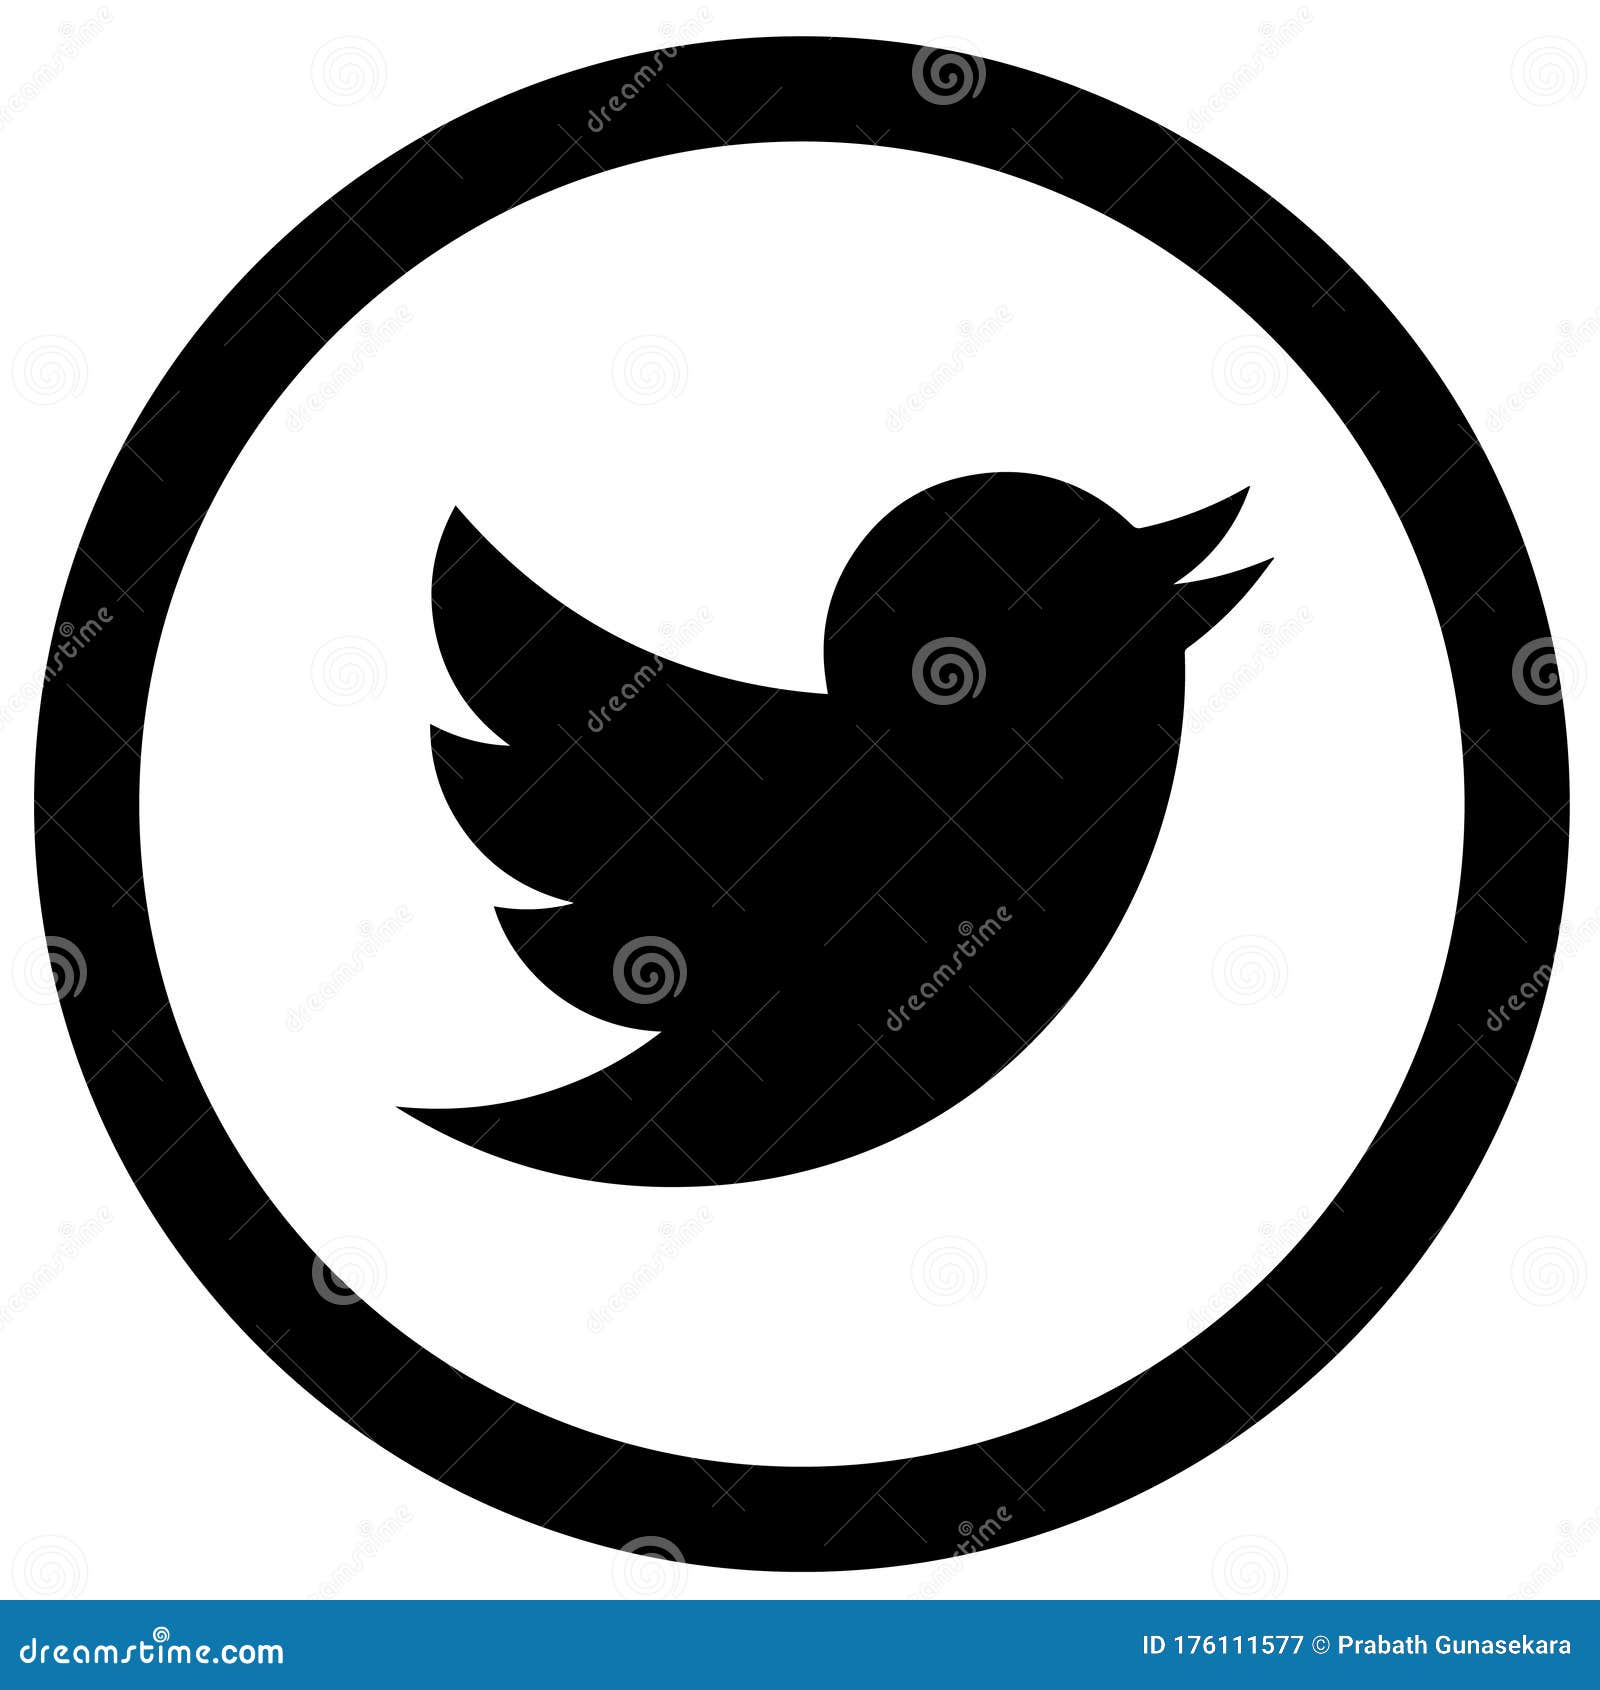 black twitter logos